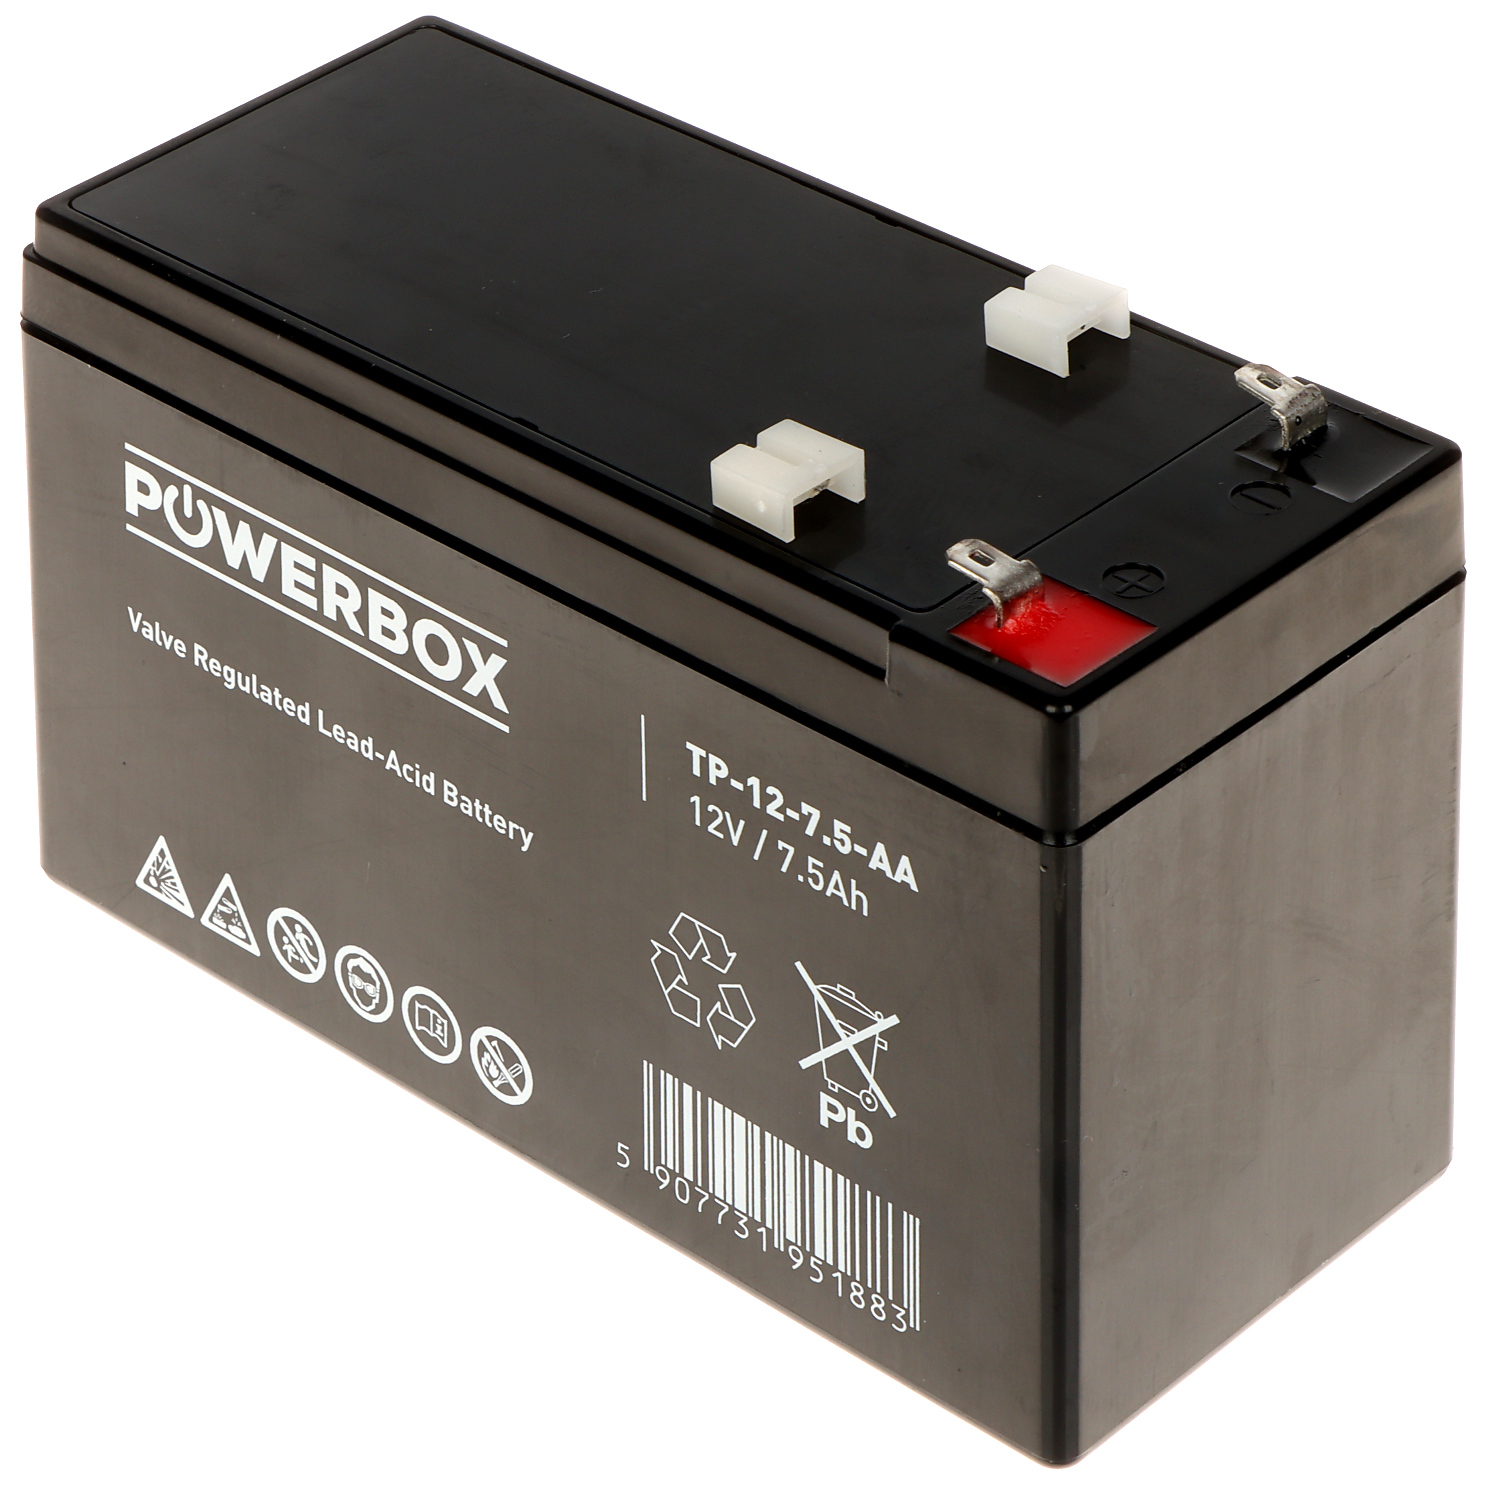 BATERÍA 12V/7.5AH-POWERBOX - Capacidad de la batería hasta 9Ah - Delta